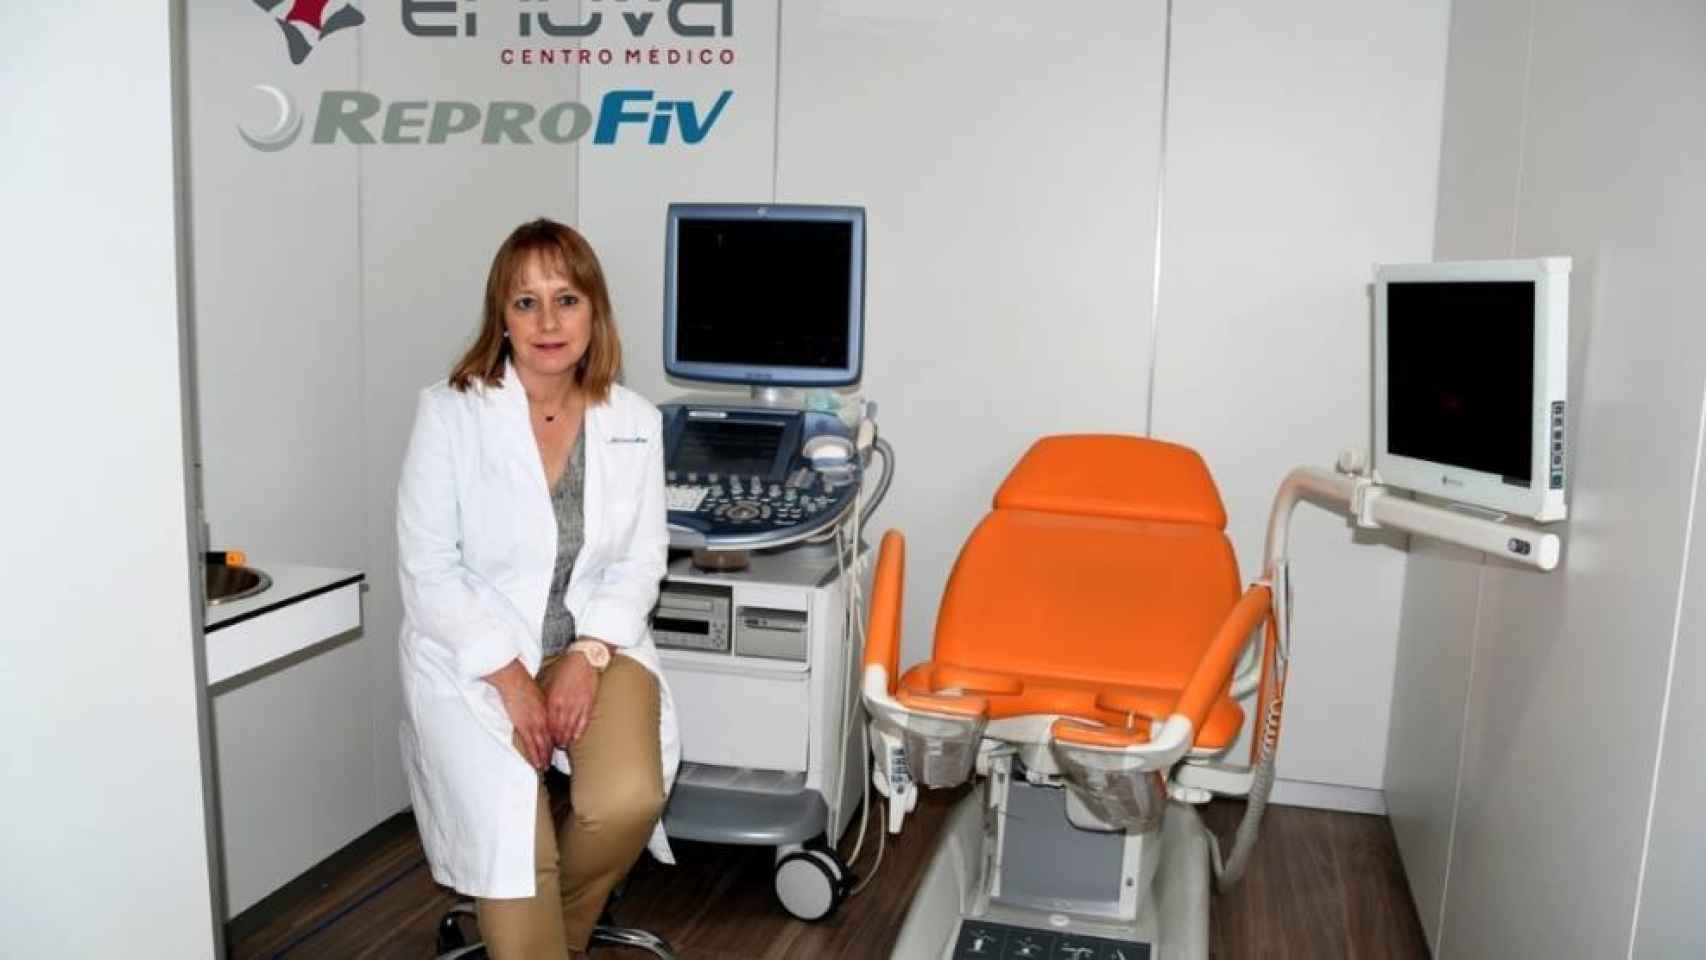 Elena Martín Hidalgo, directora médica de Reprofiv